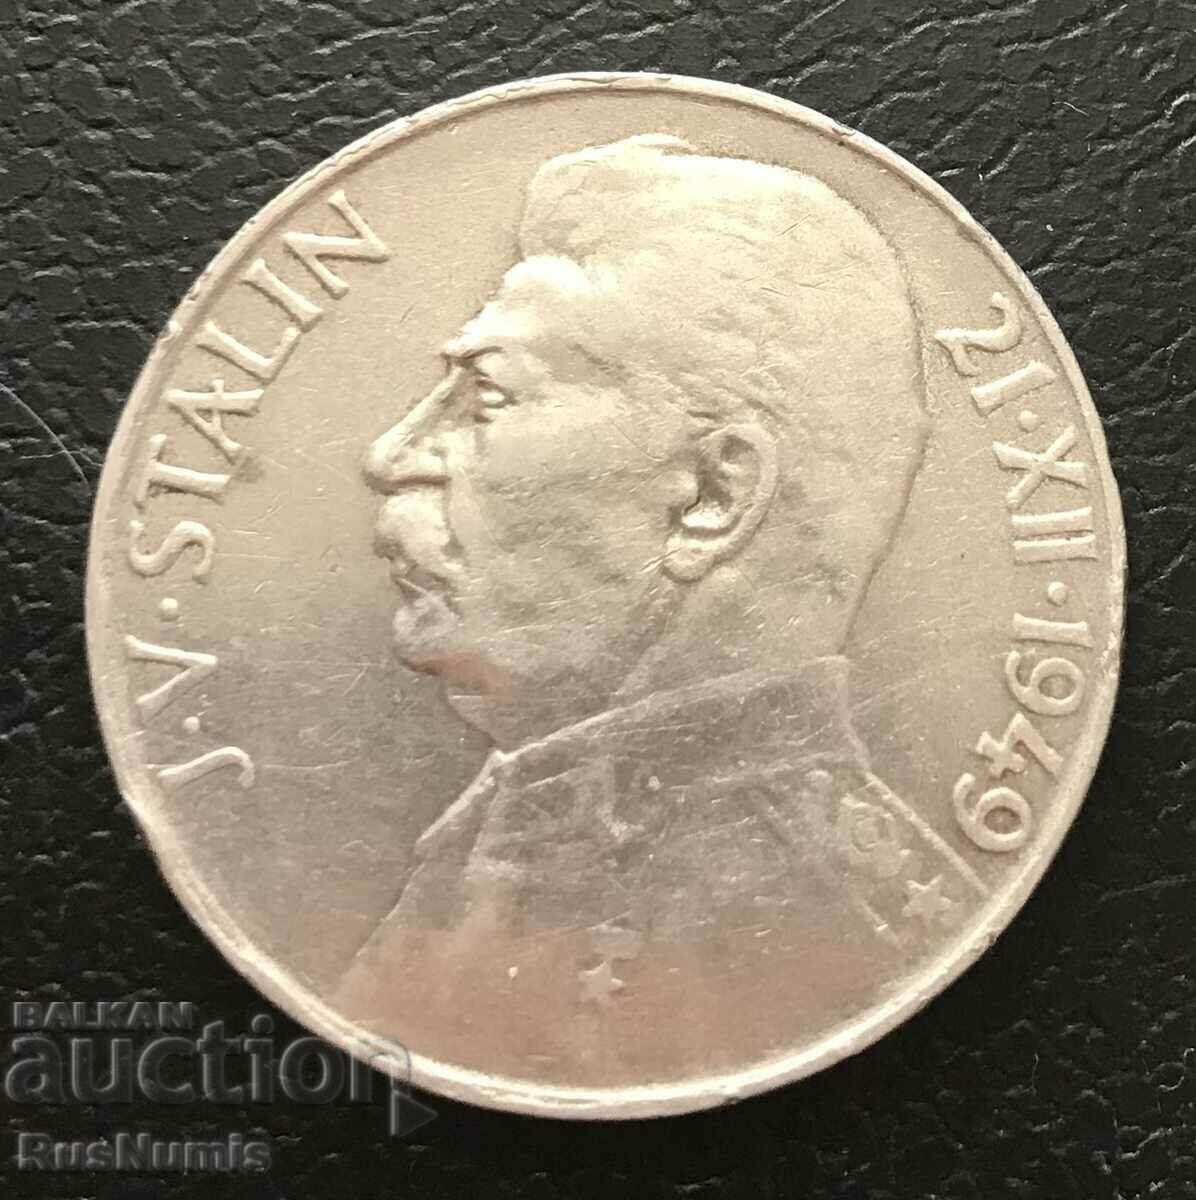 Czechoslovakia. 100 kroner 1949. Stalin. Silver.